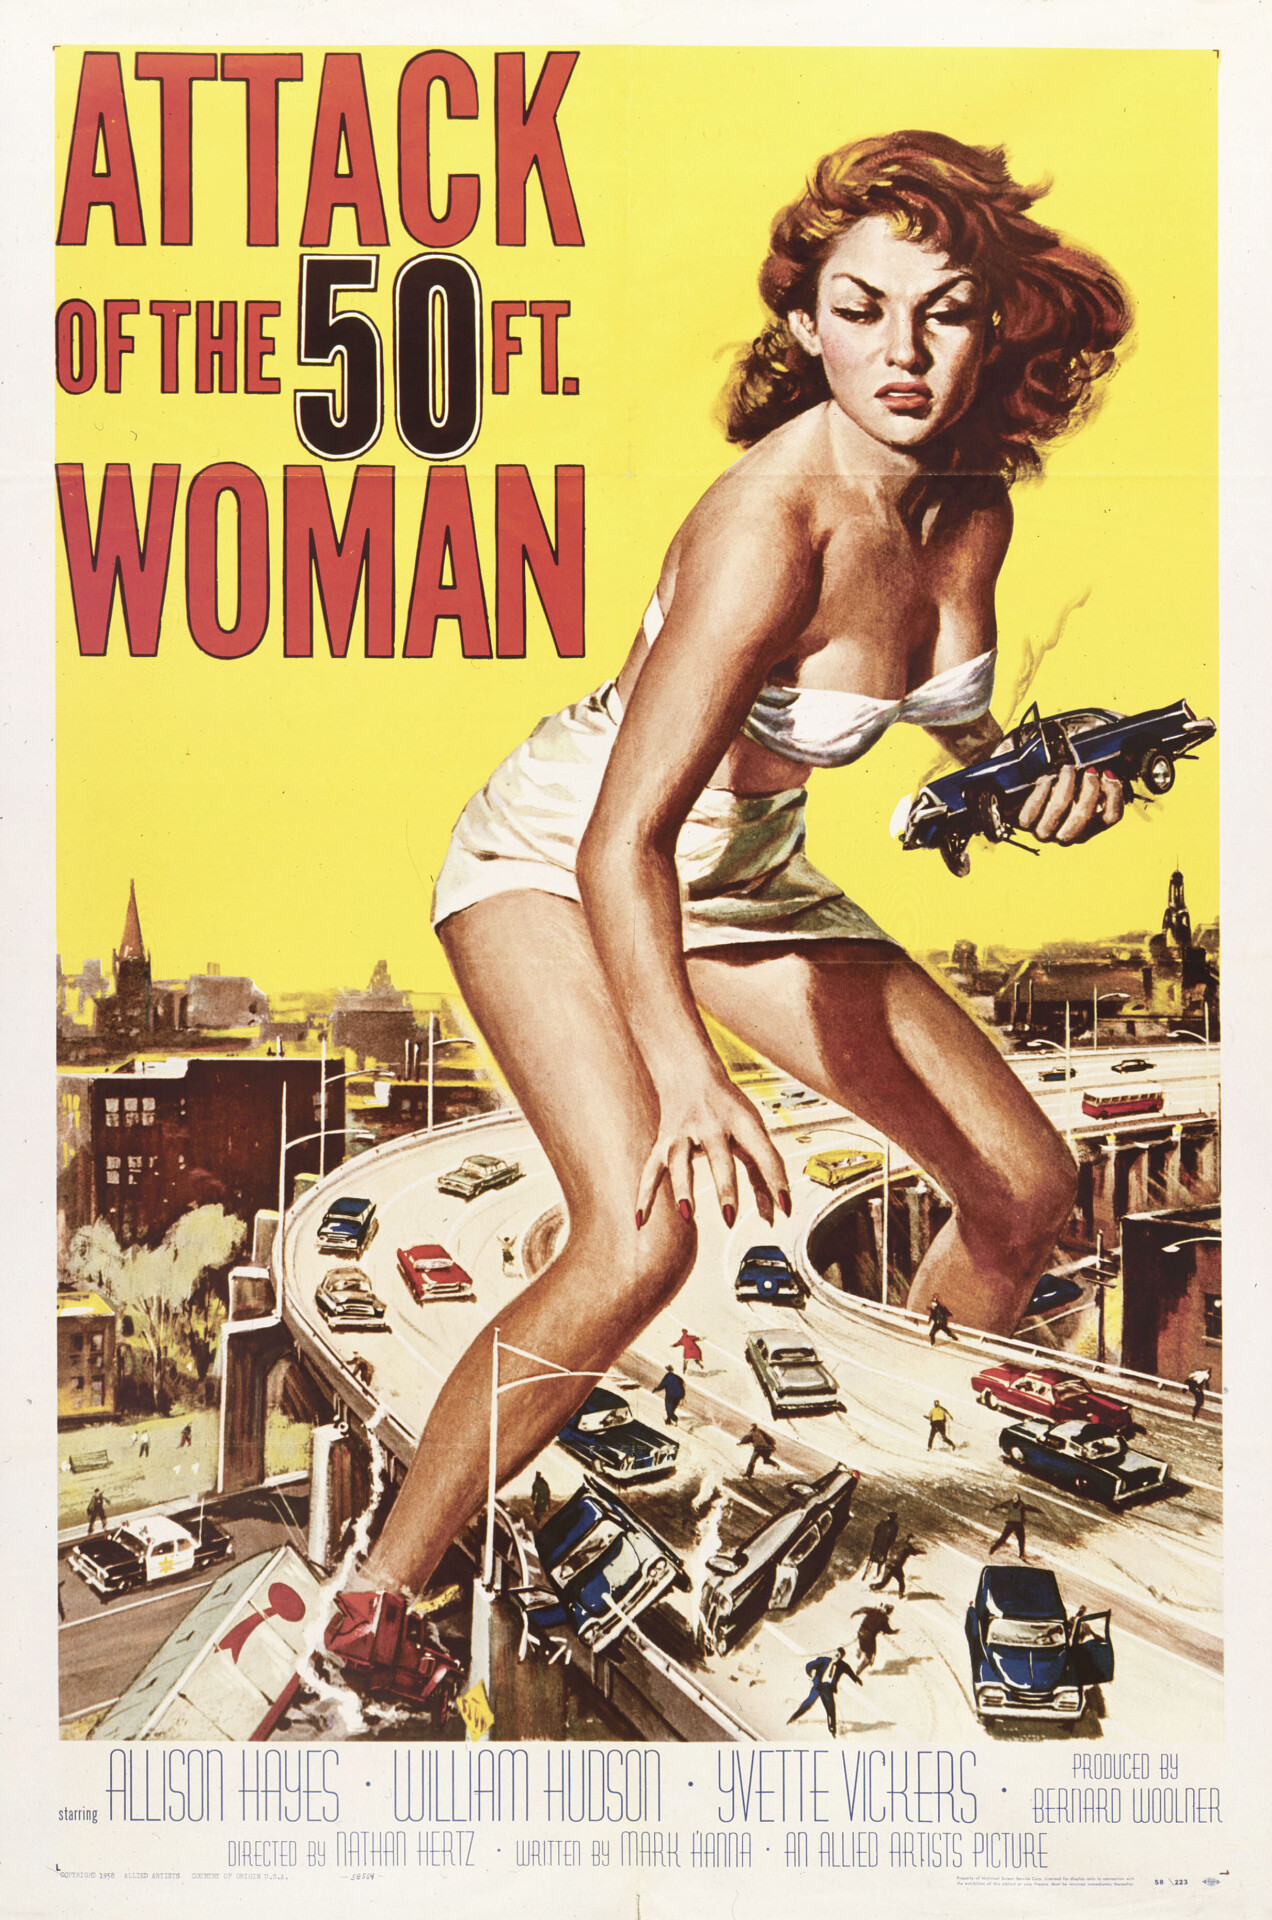 Атака 50-футовой женщины (Attack of the 50 Foot Woman, 1958), режиссёр Натан Джуран, американский постер к фильму, автор Рейнольд Браун (ужасы, 1958 год)